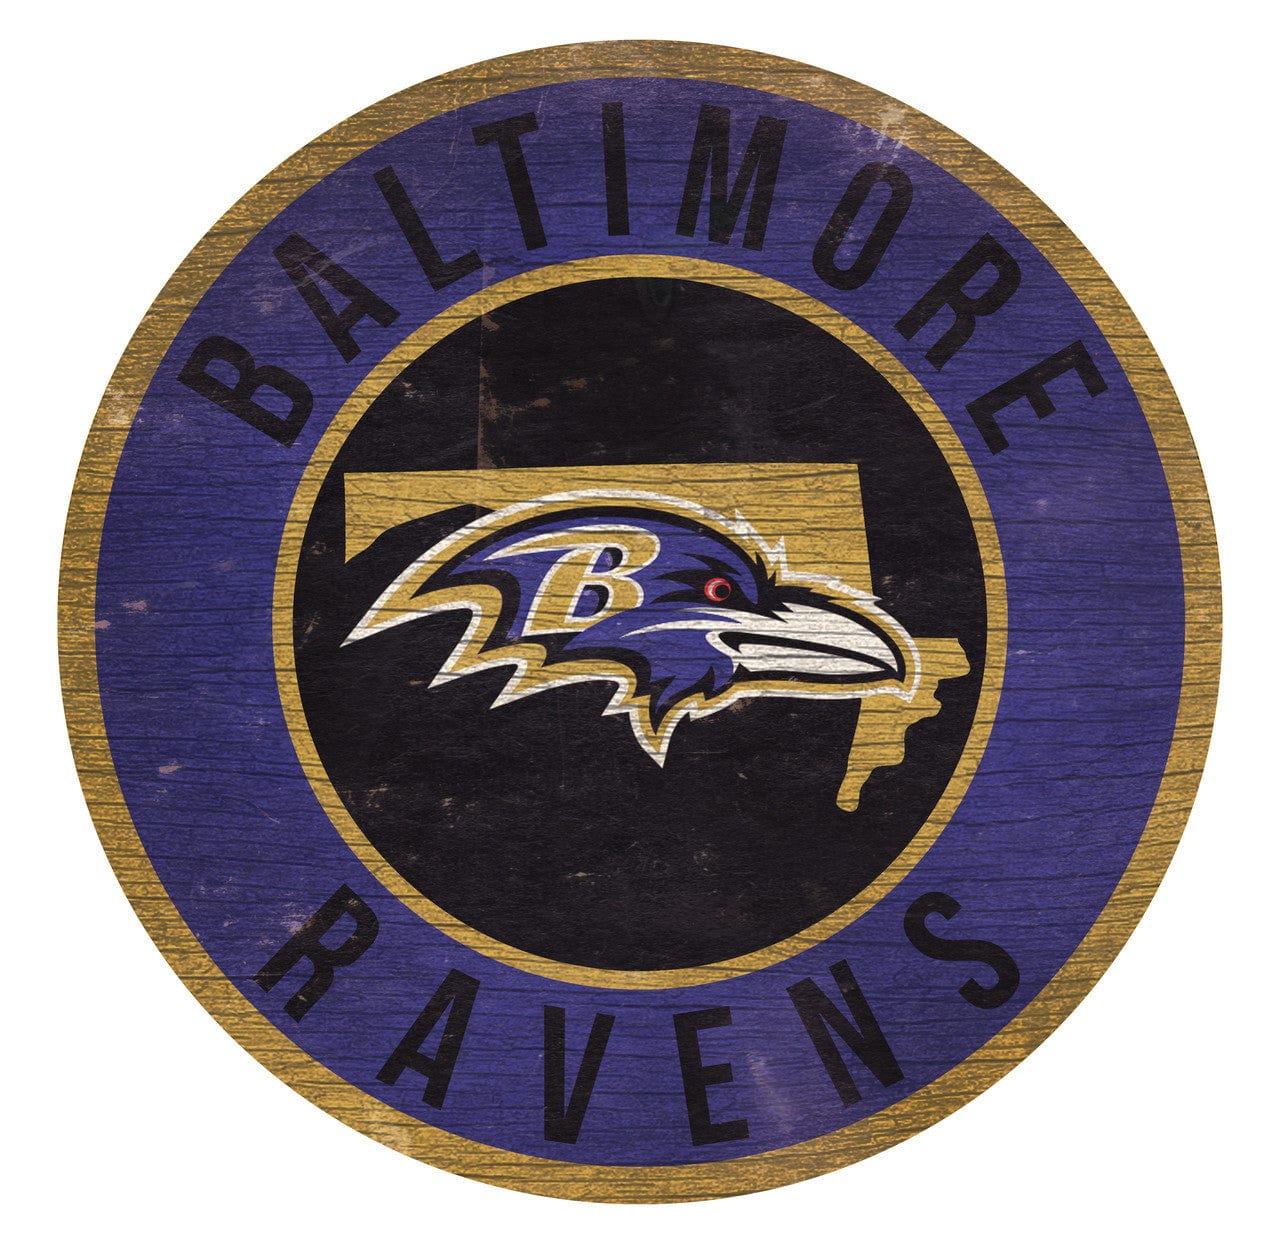 Baltimore Ravens Coffee Mug 14oz Sculpted Relief